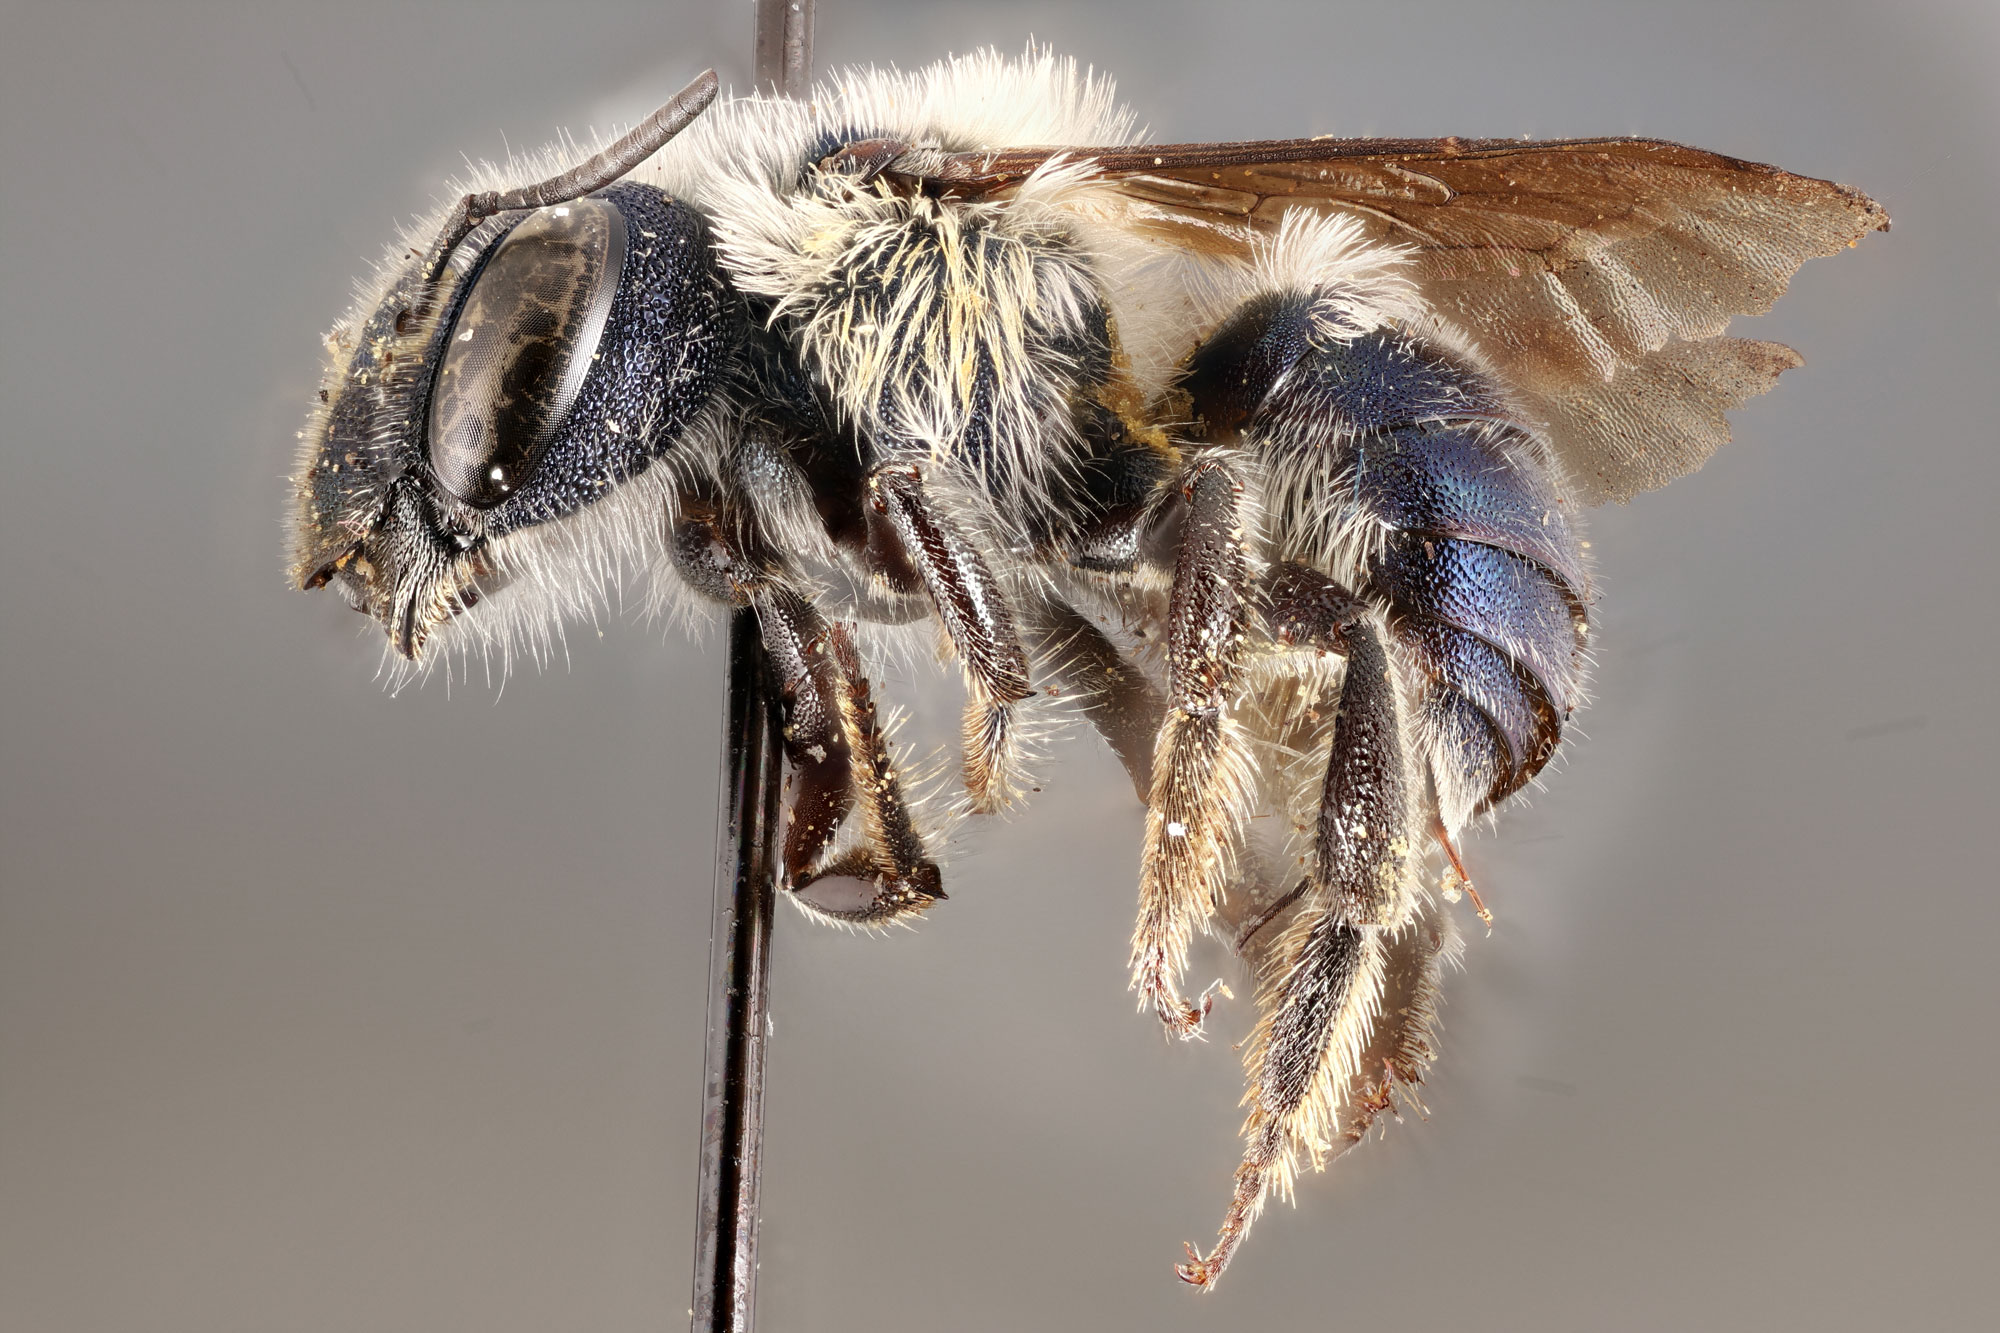 bee species in florida